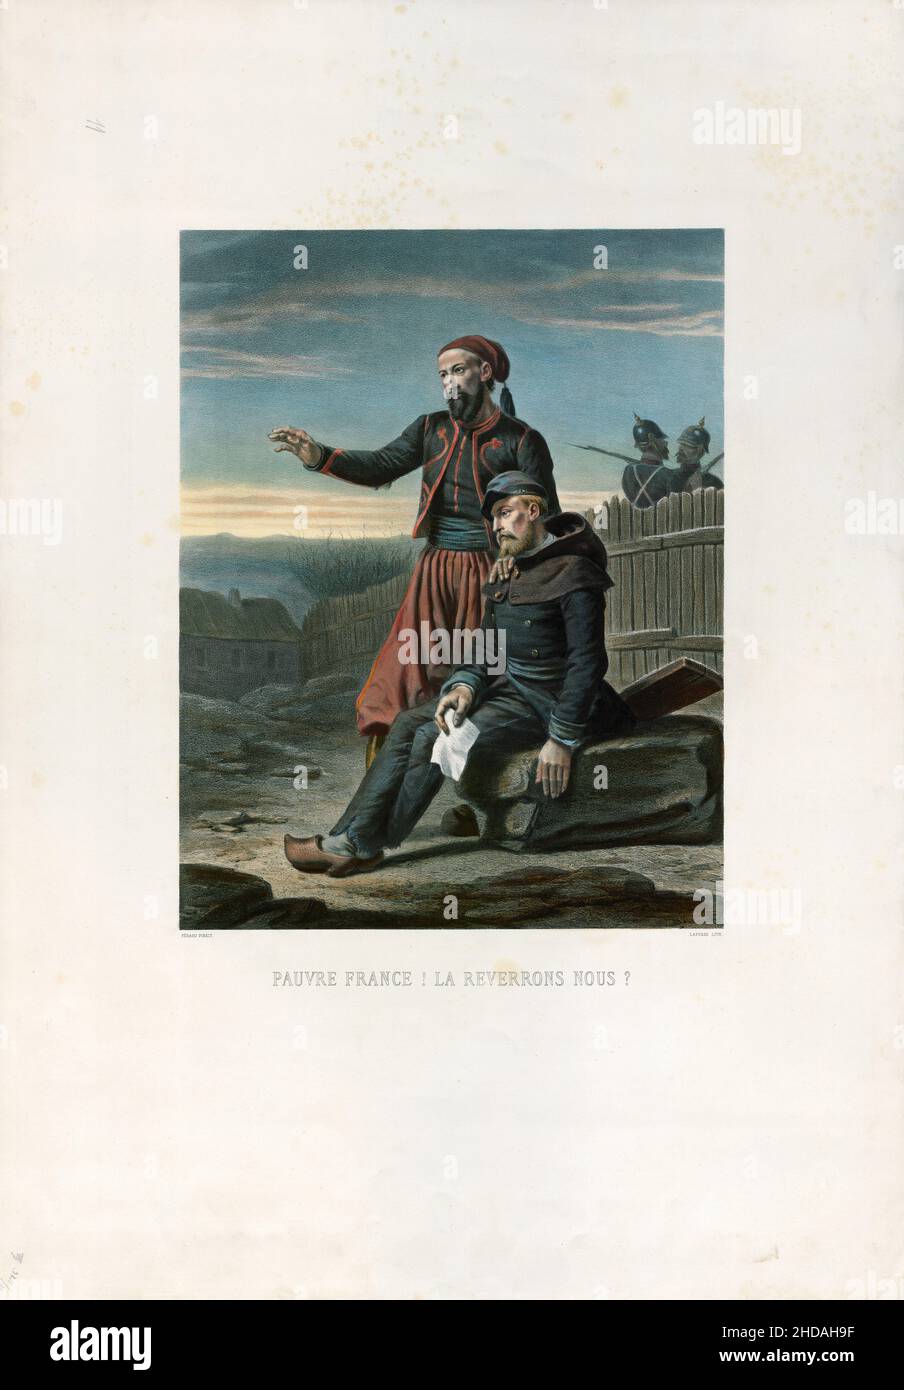 Französische Lithographie von französischen Kriegsgefangenen während des französisch-preußischen Krieges: Das arme Frankreich! Werden Wir Sie Wiedersehen? 1875 Stockfoto